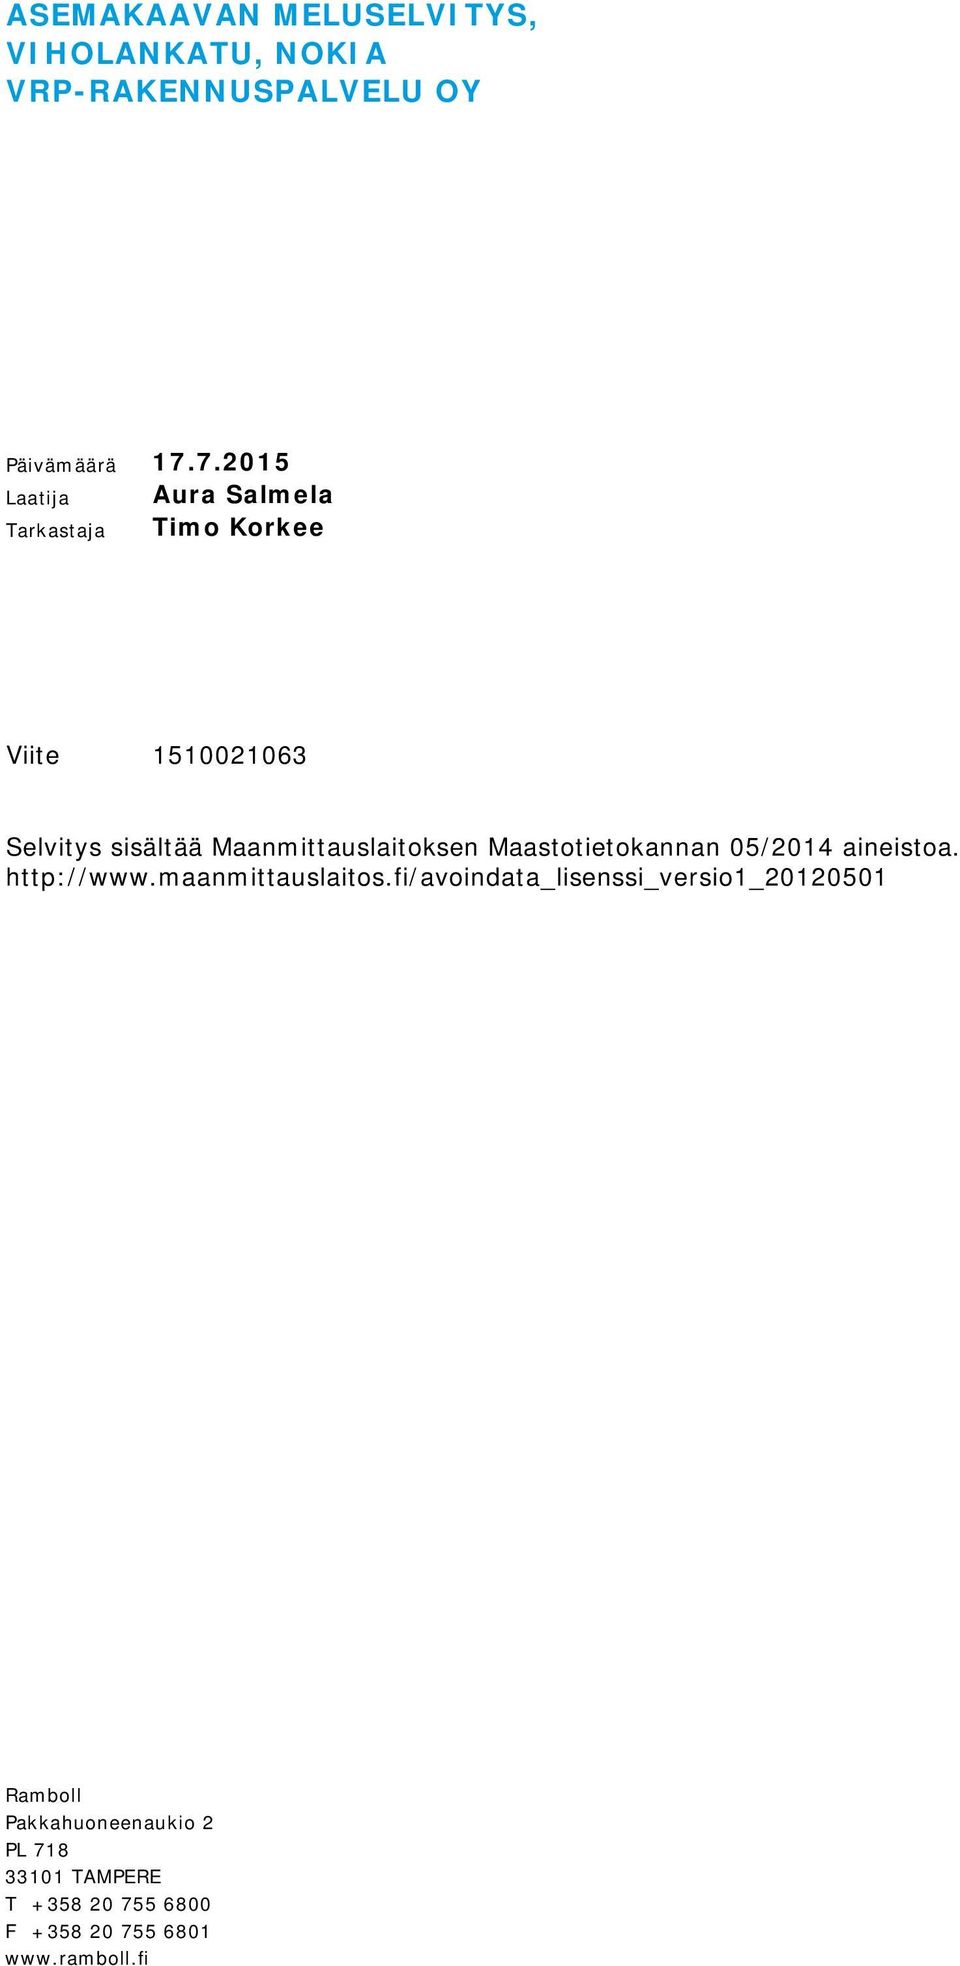 Maanmittauslaitoksen Maastotietokannan 05/2014 aineistoa. http://www.maanmittauslaitos.